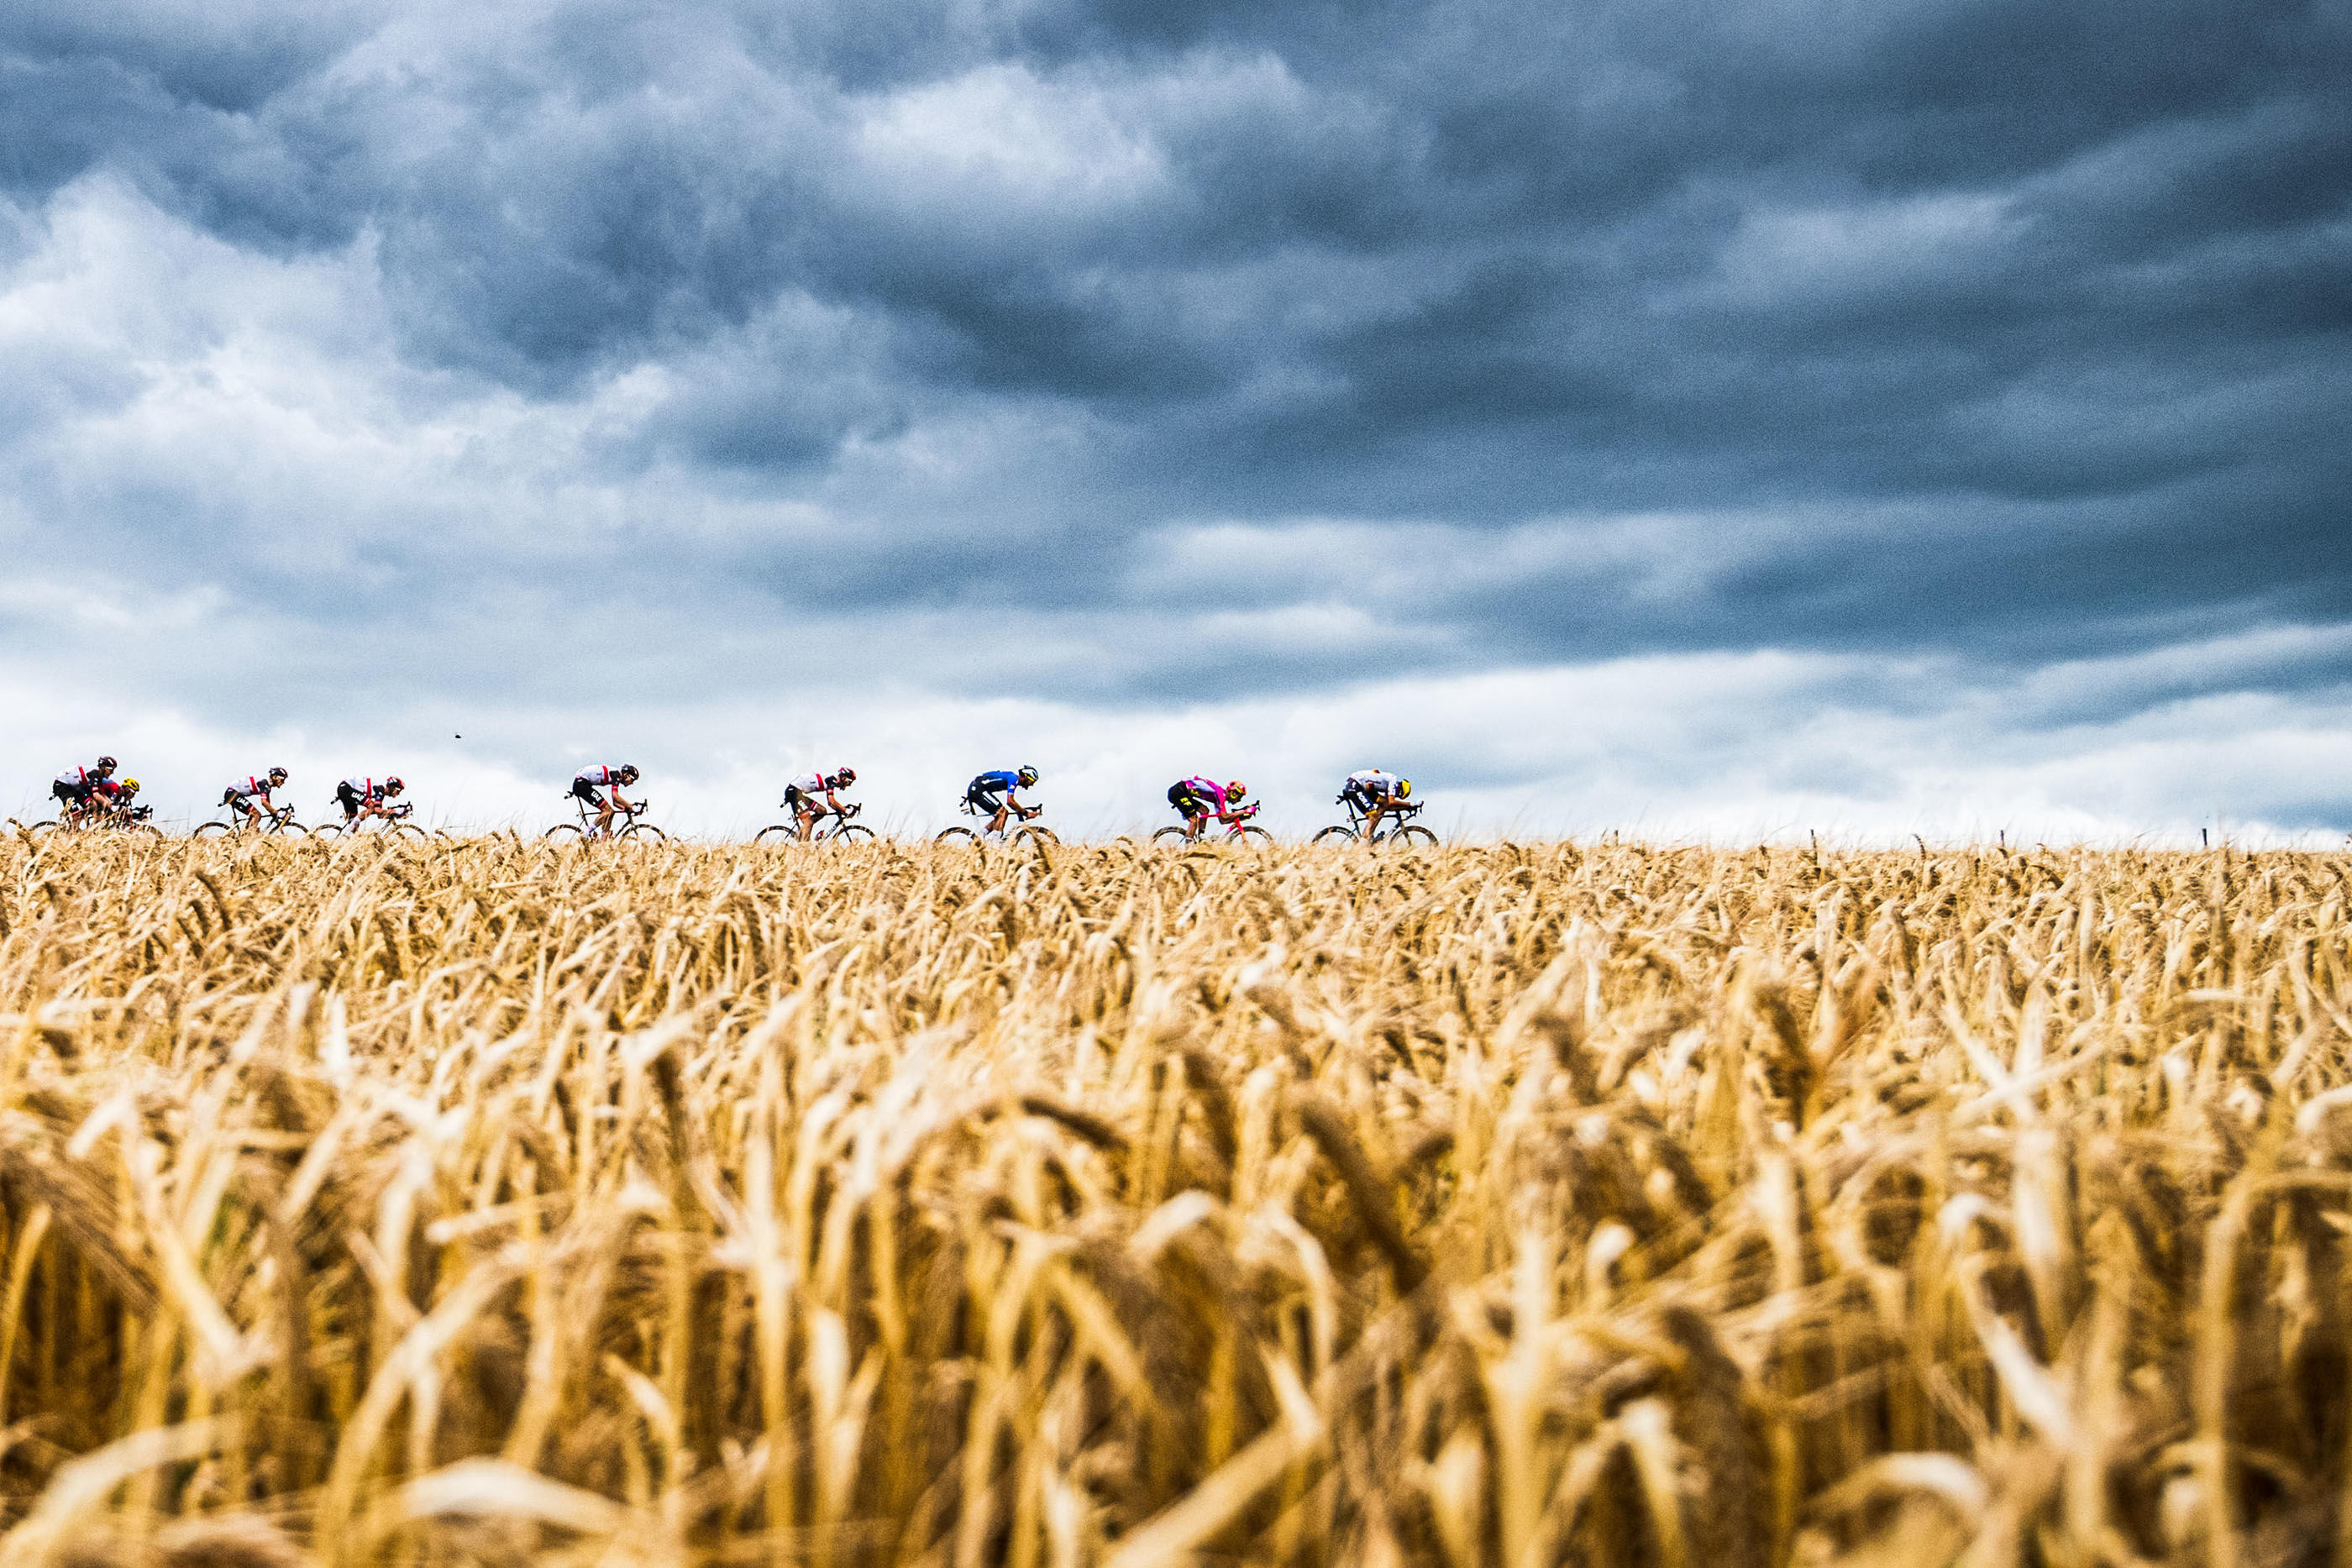 «Tour de France : au cœur du peloton », la nouvelle série documentaire sur Netflix, fait vivre la Grande Boucle de l'intérieur en suivant huit équipes, dans les bus, dans les hôtels et sur les vélos. ASO/Charly Lopez